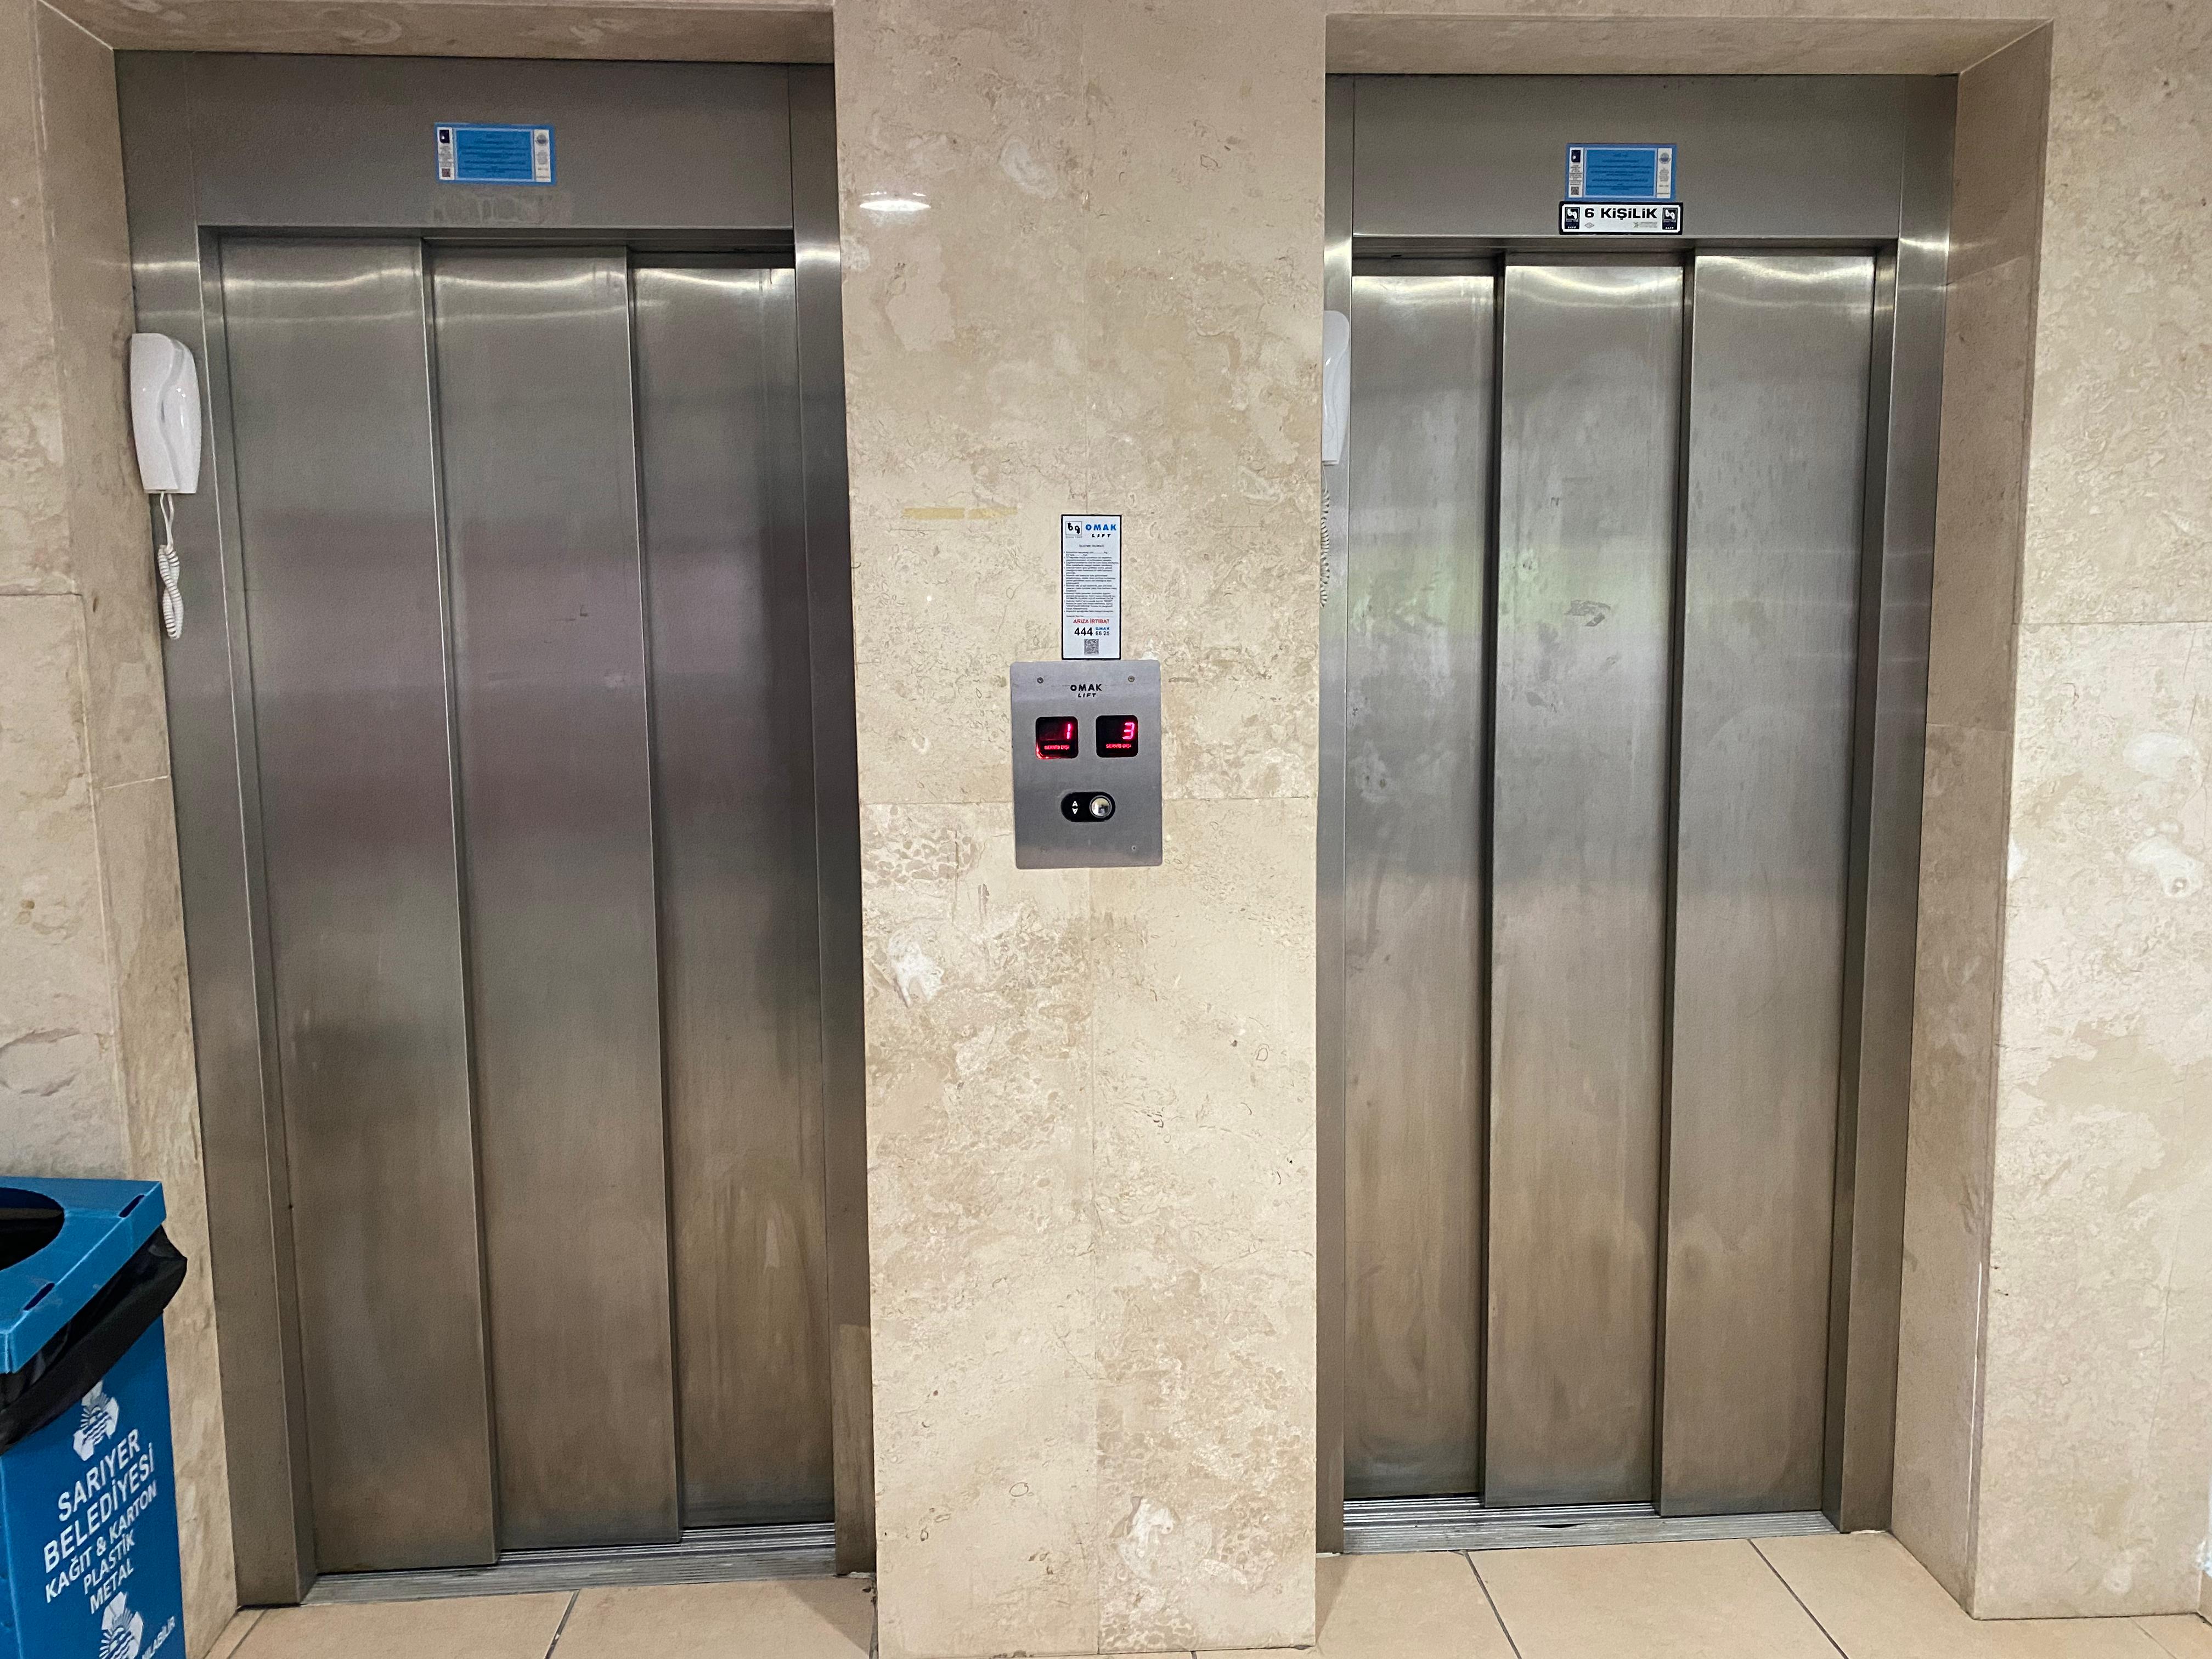 Altan Edige Yurdu asansörleri